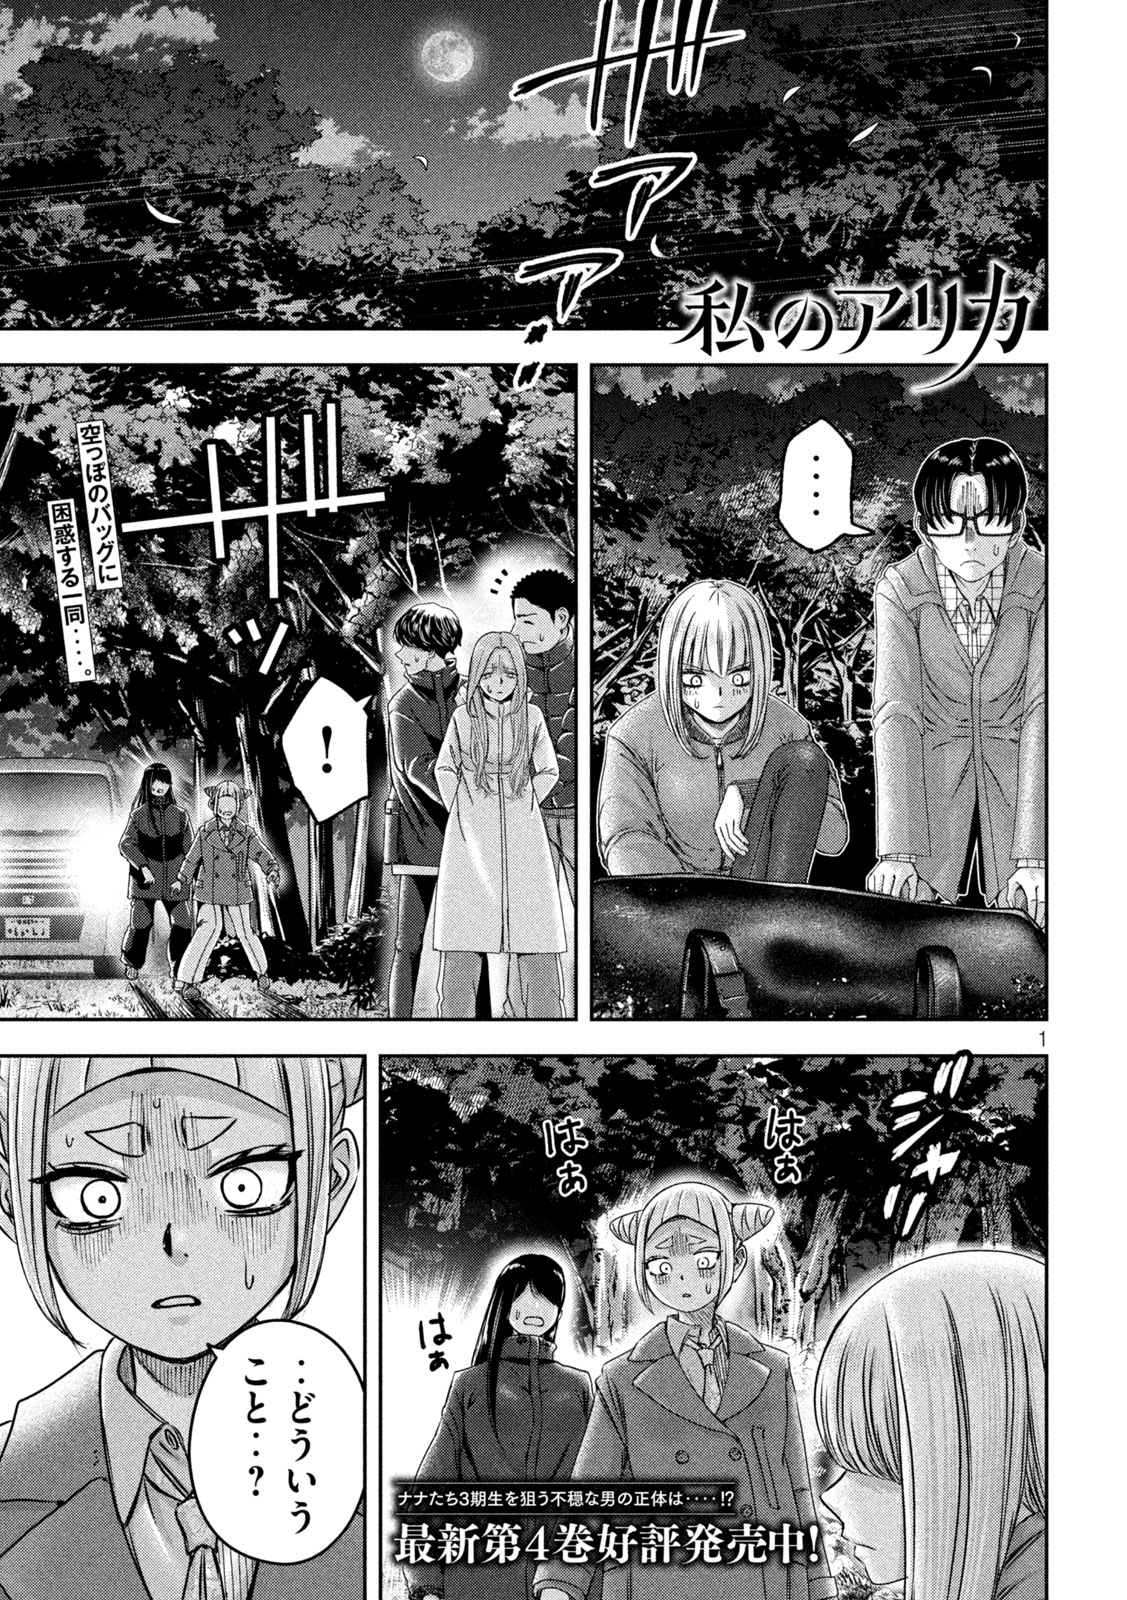 Watashi no Arika - Chapter 49 - Page 1